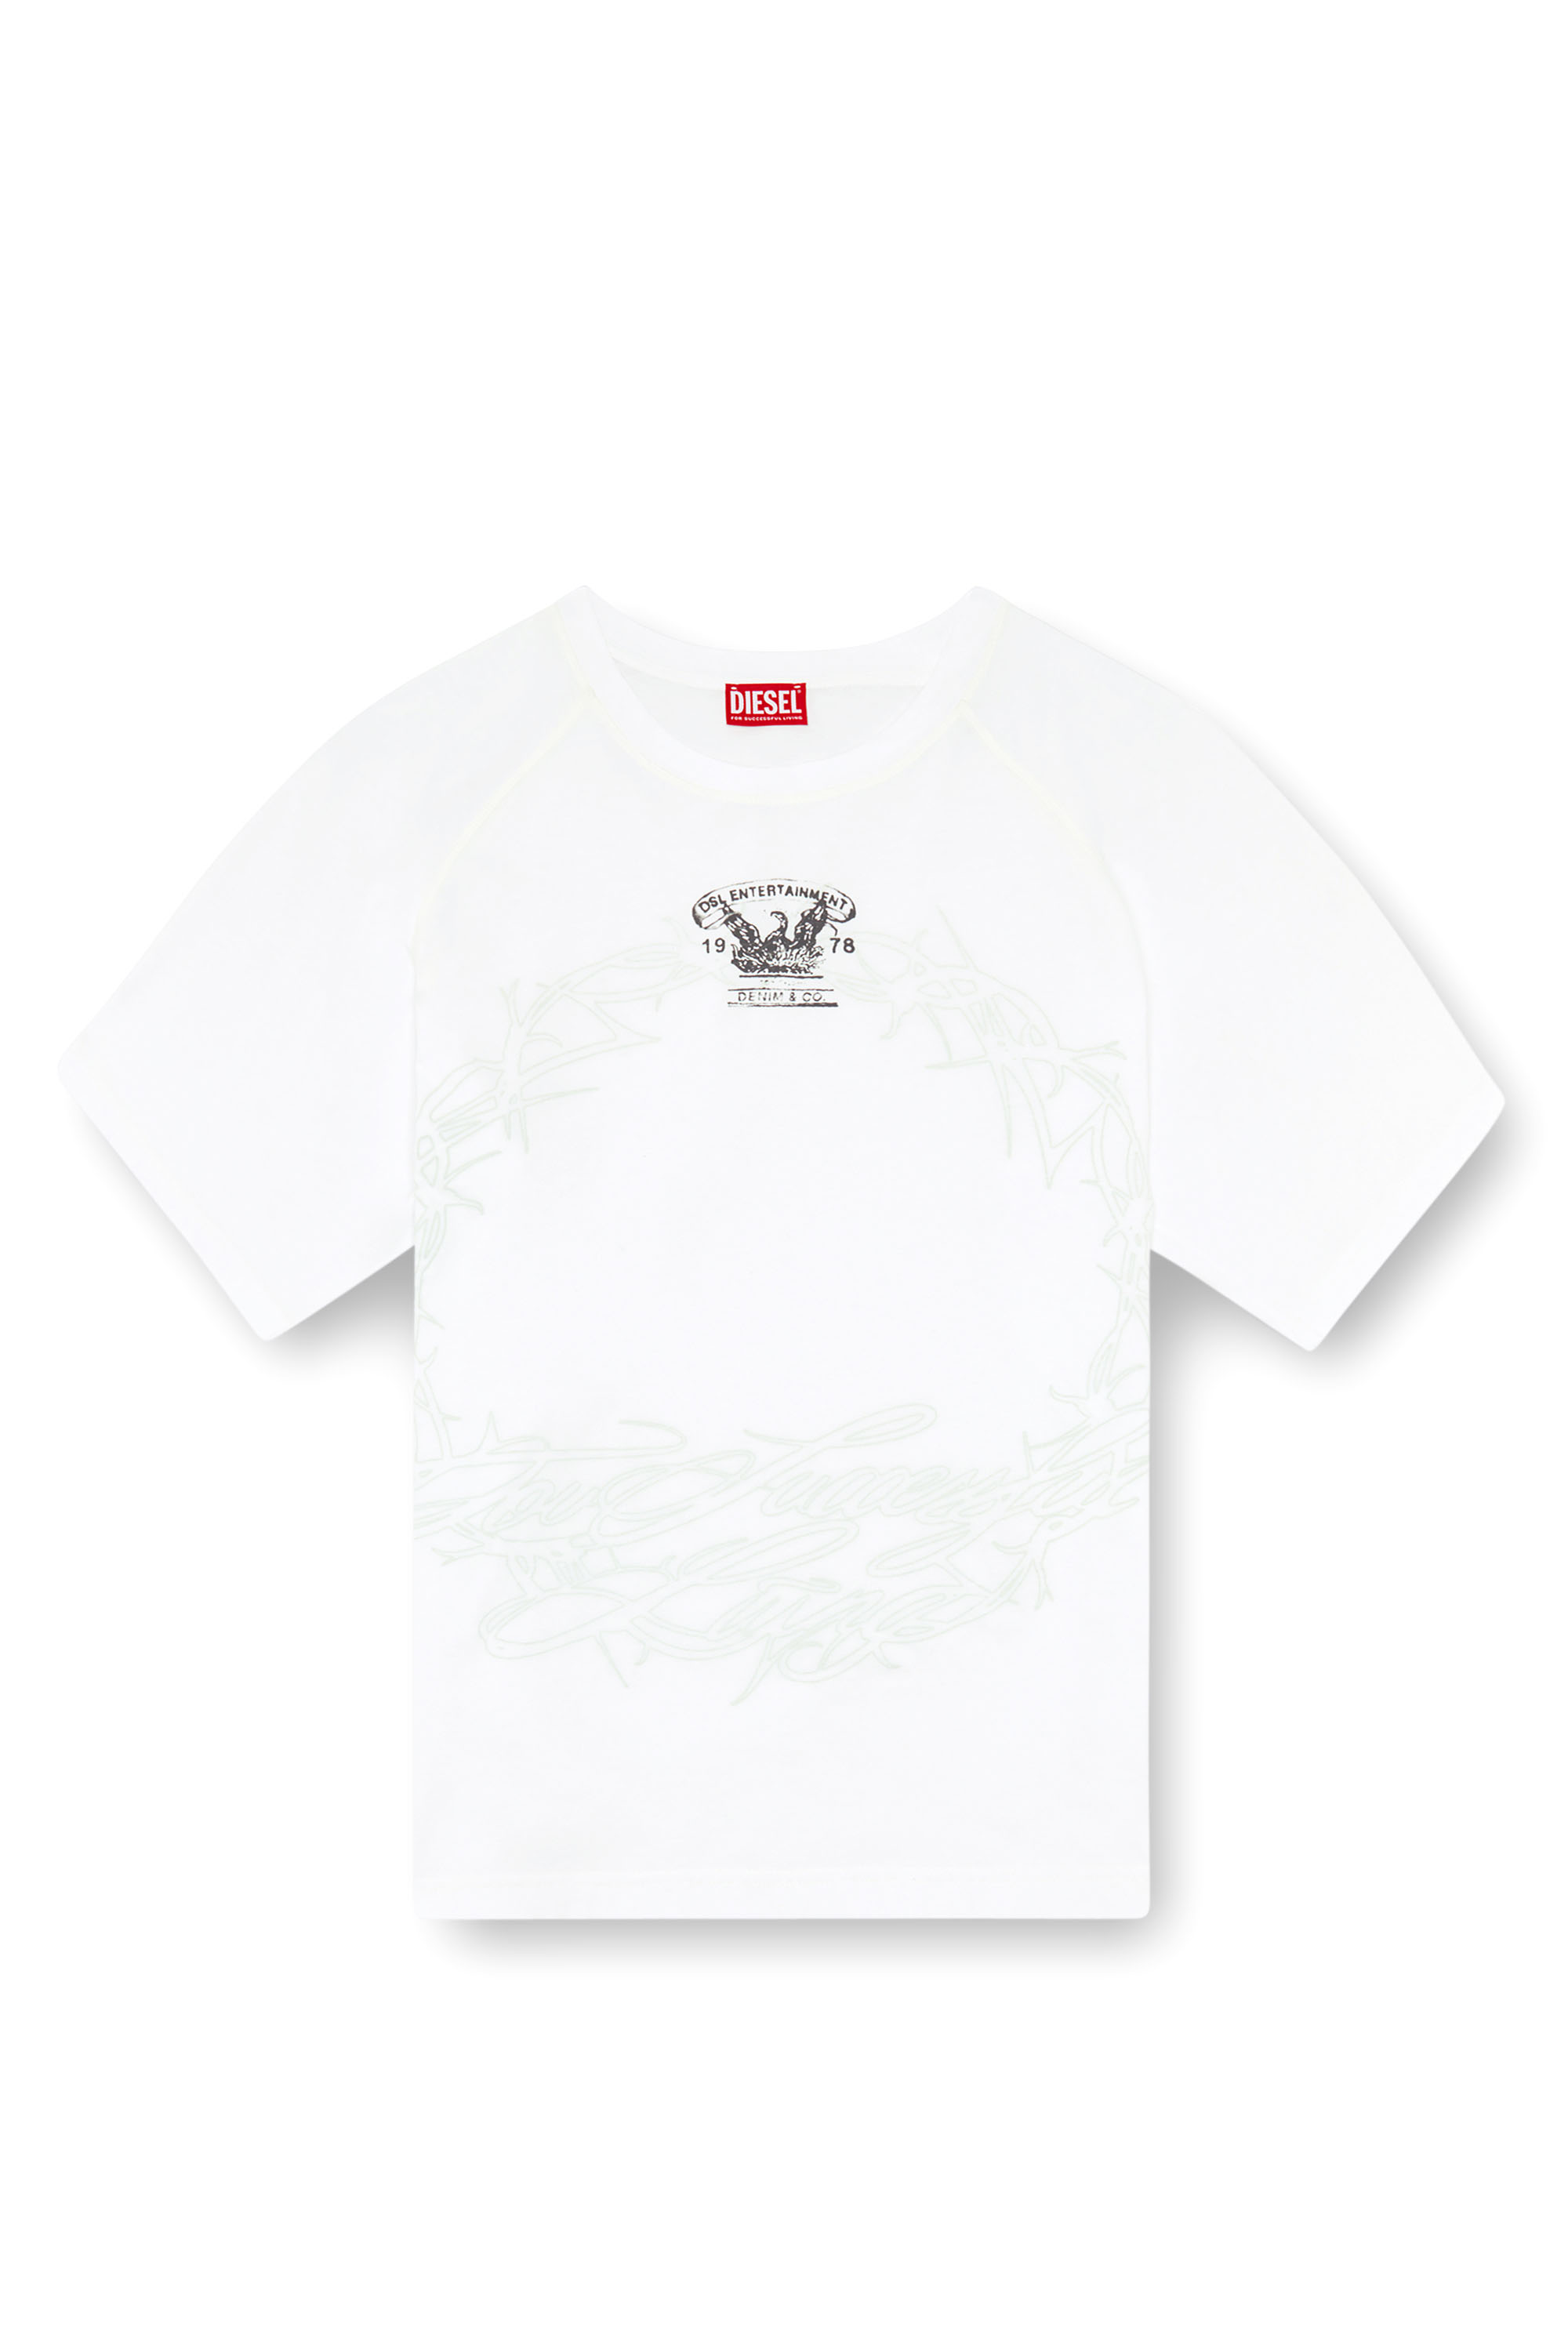 Diesel - T-ROXT-Q1, Homme T-shirt avec imprimé inside-out in Blanc - Image 3